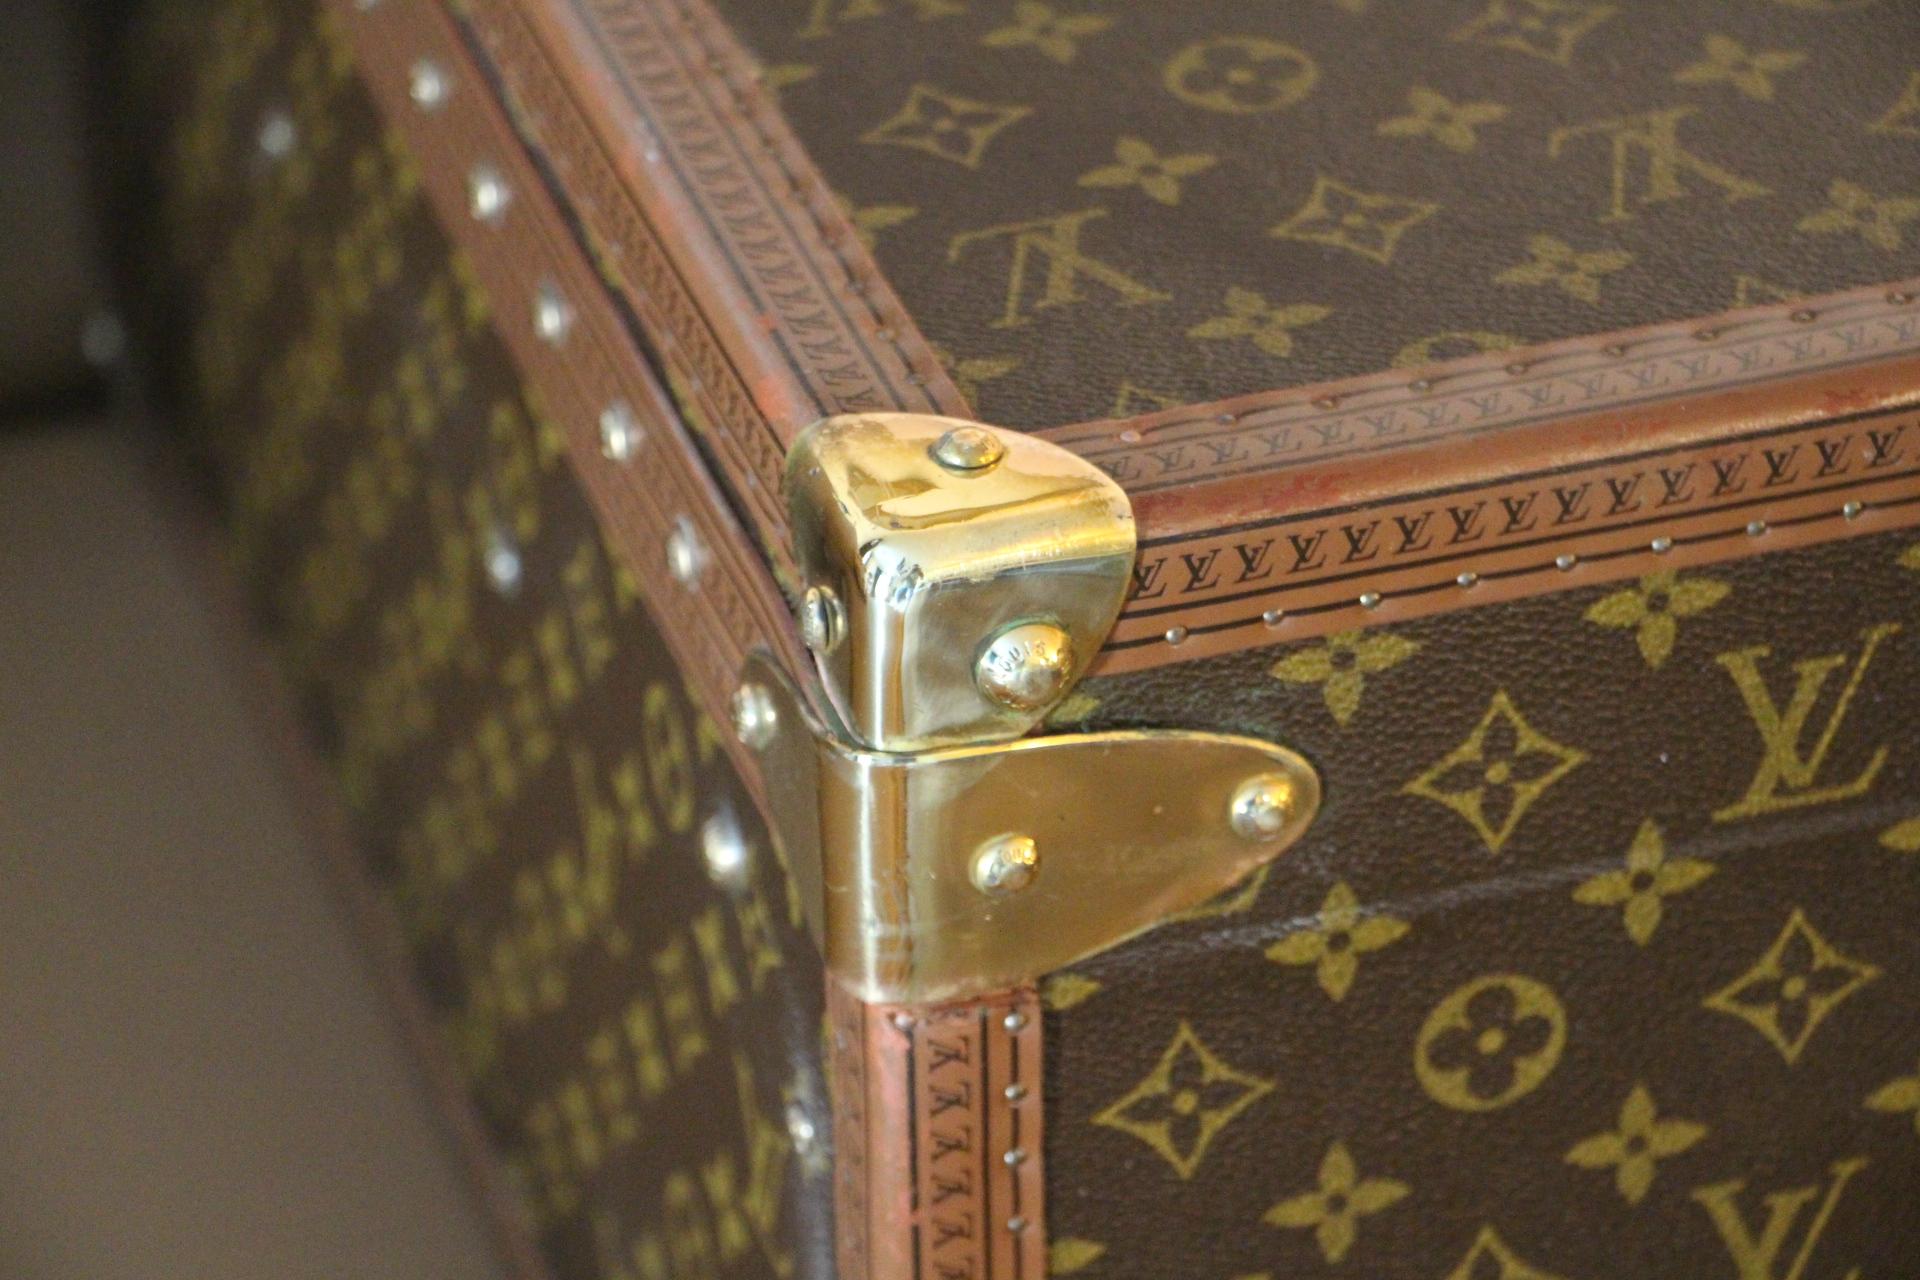  Louis Vuitton Suitcase, Alzer 80 Louis Vuitton Suitcase, Large Vuitton Suitcase 11